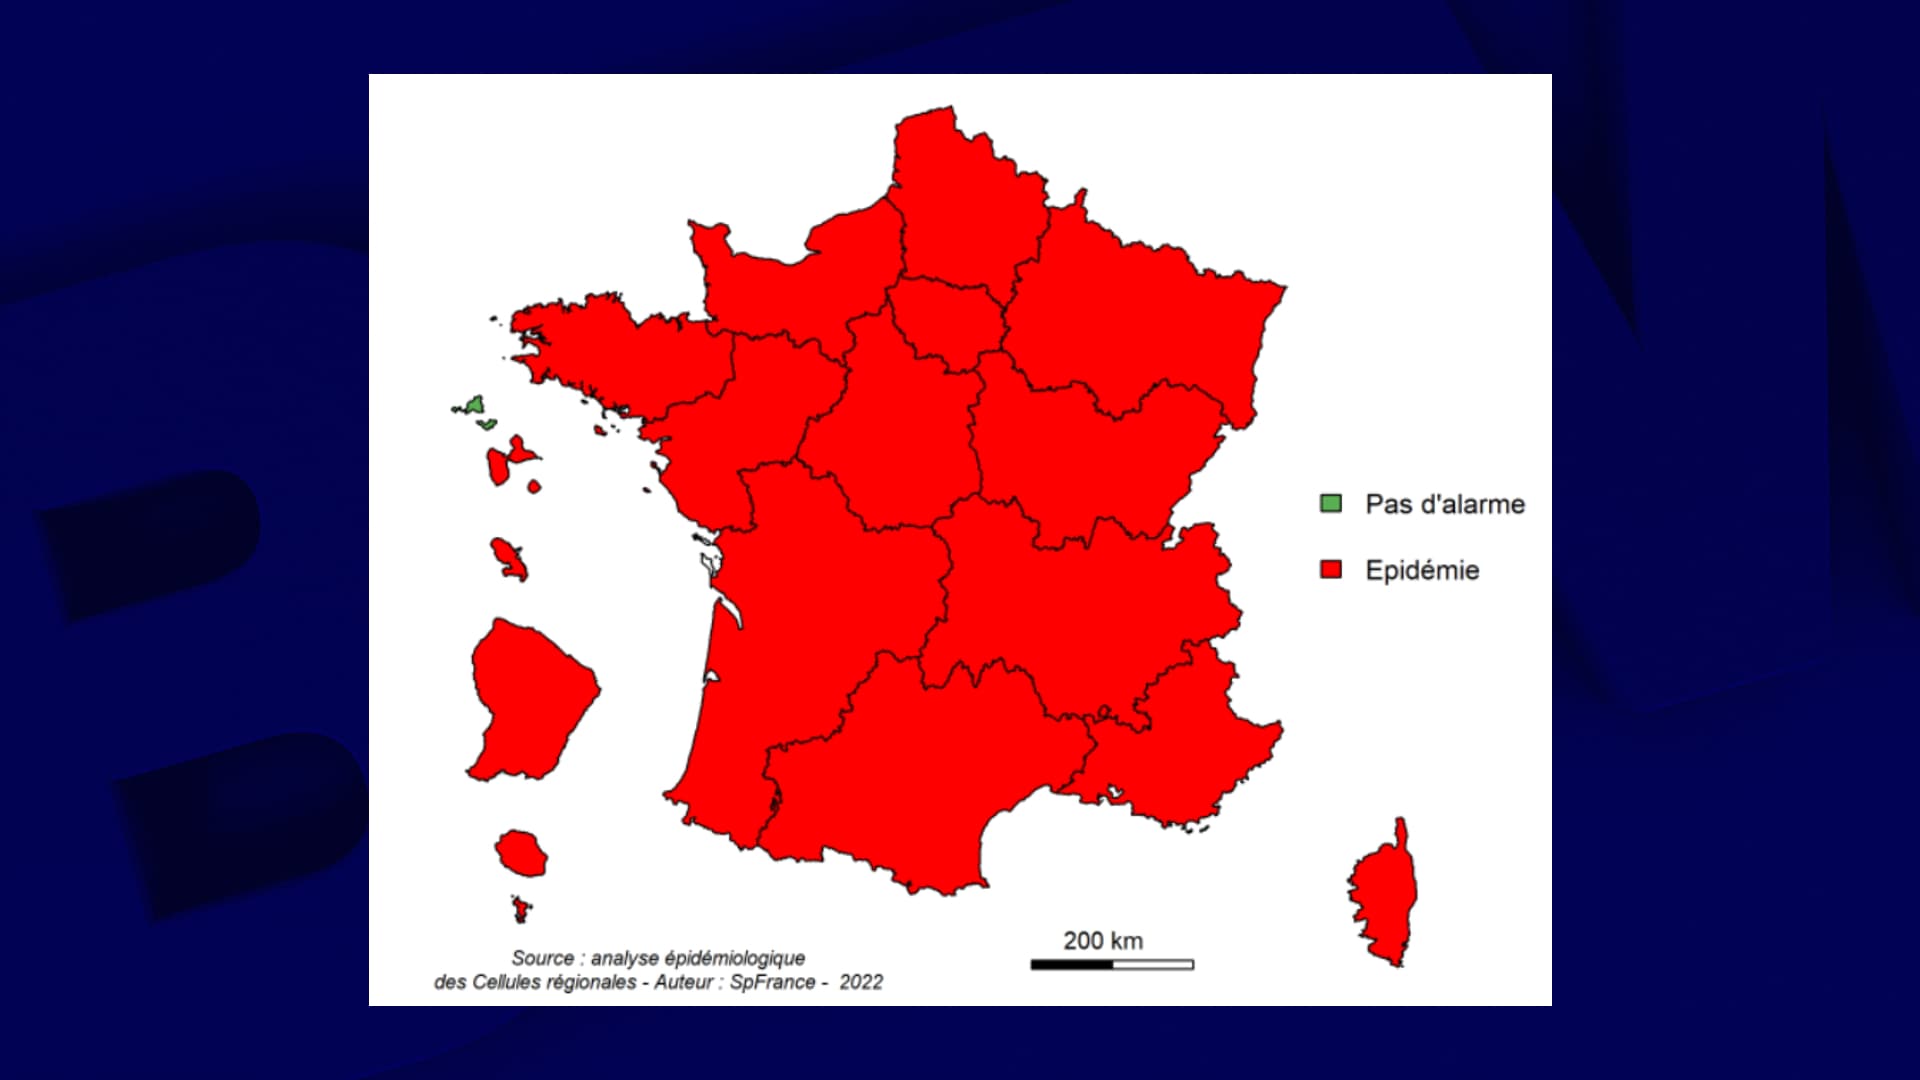 Epidemia nadal postępuje we Francji, gdzie liczba hospitalizacji gwałtownie wzrosła